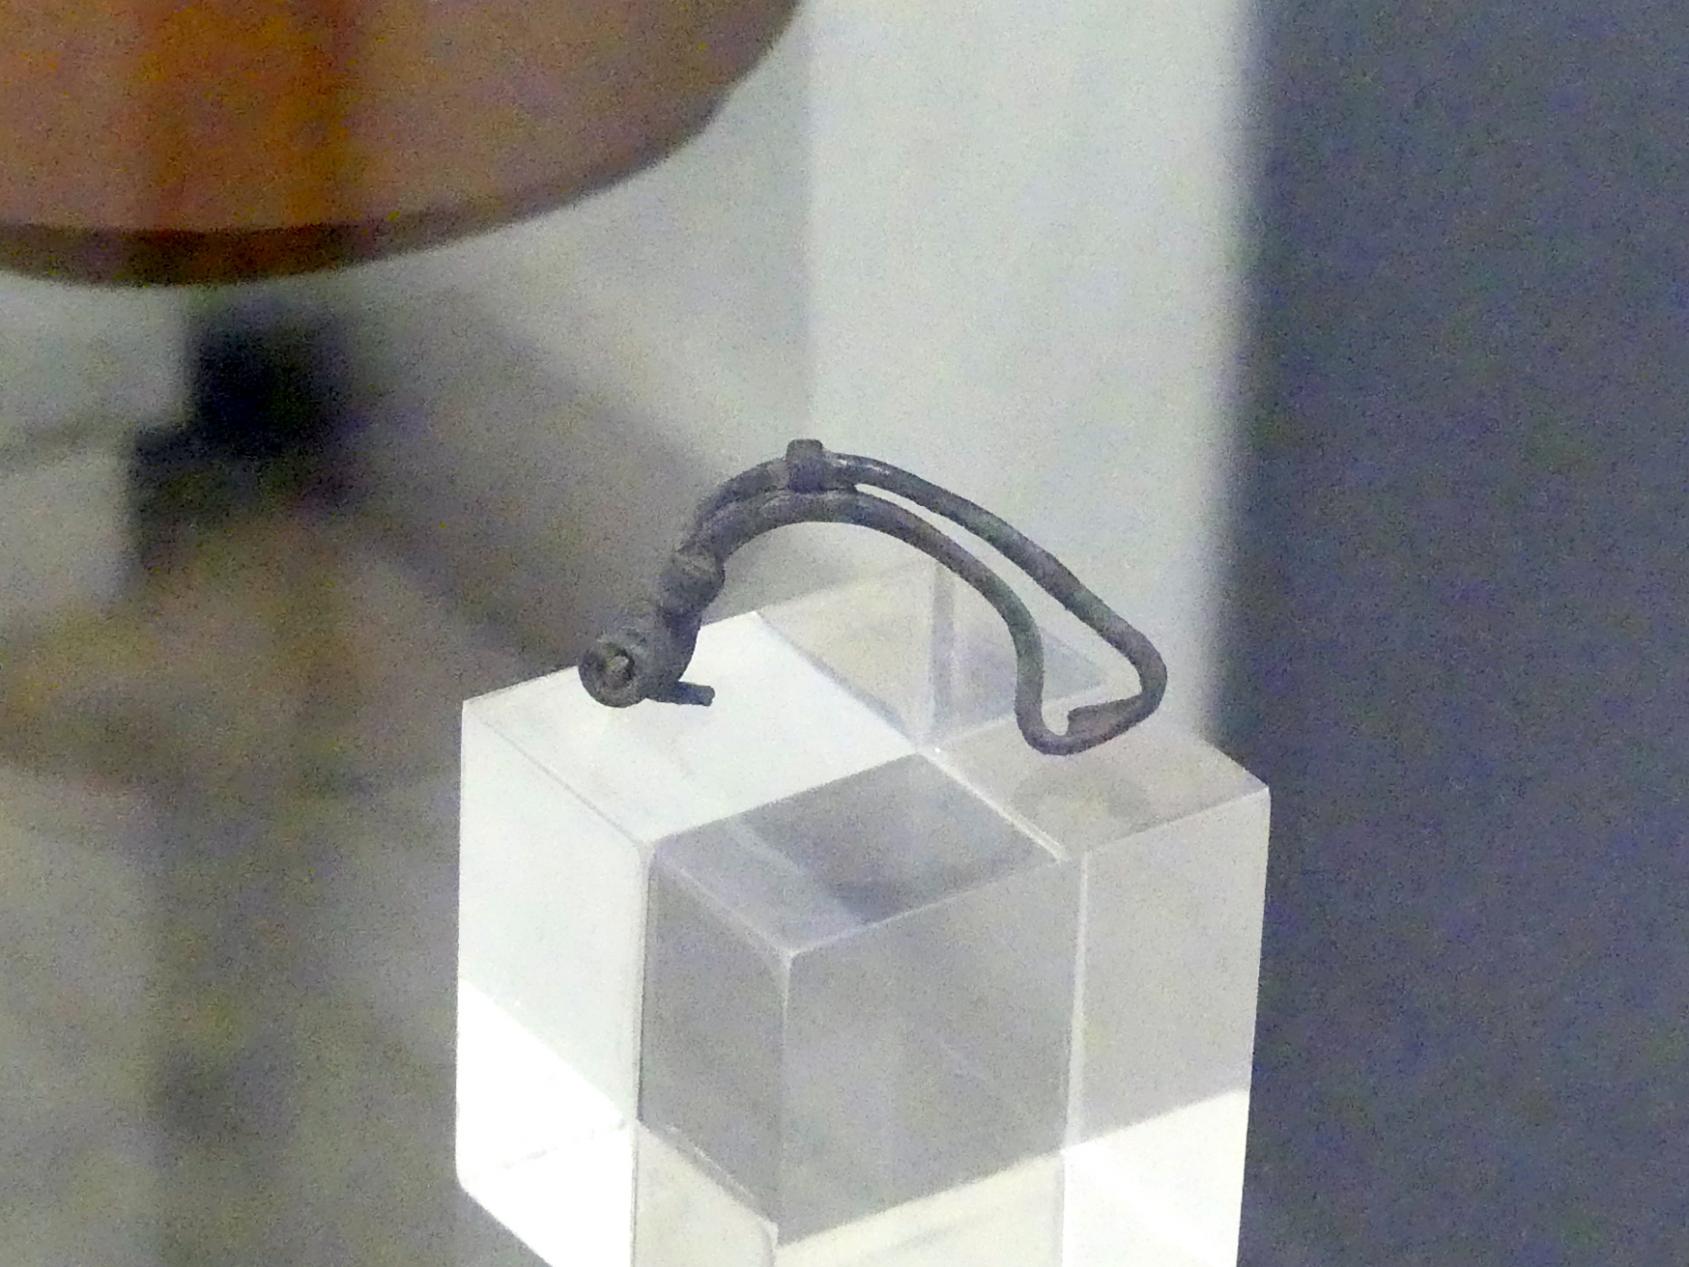 Spätkeltisch-germanische Fibel, Spätlatènezeit D2, 700 - 100 v. Chr., Bild 2/3